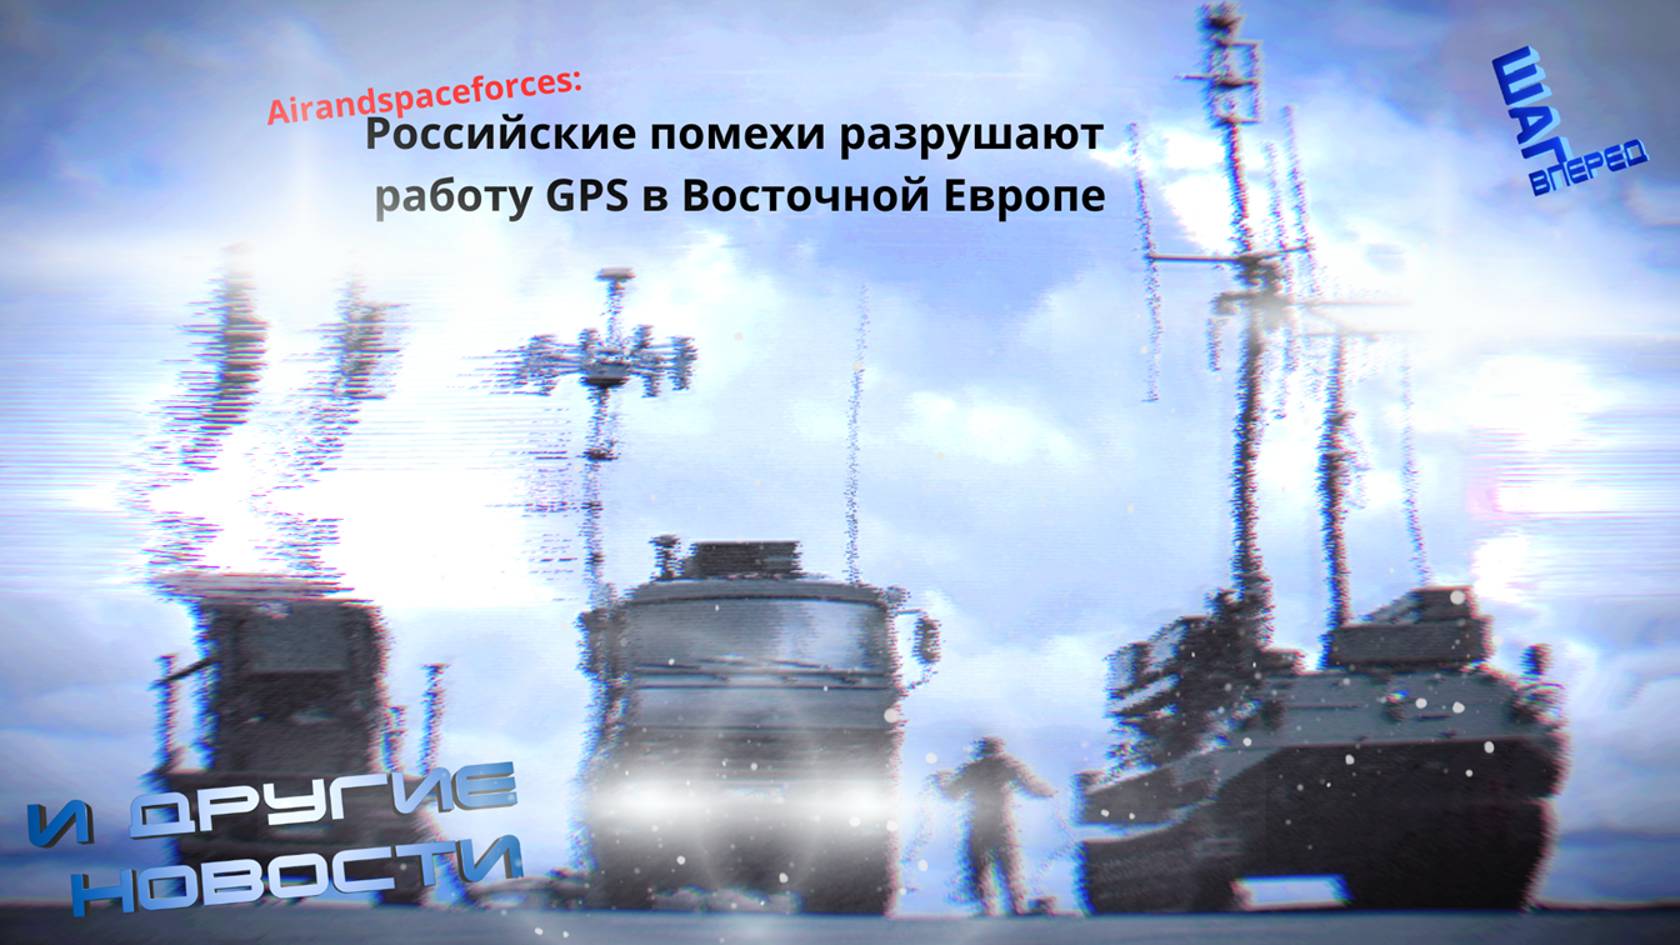 Российские системы РЭБ разрушают работу GPS в Восточной Европе